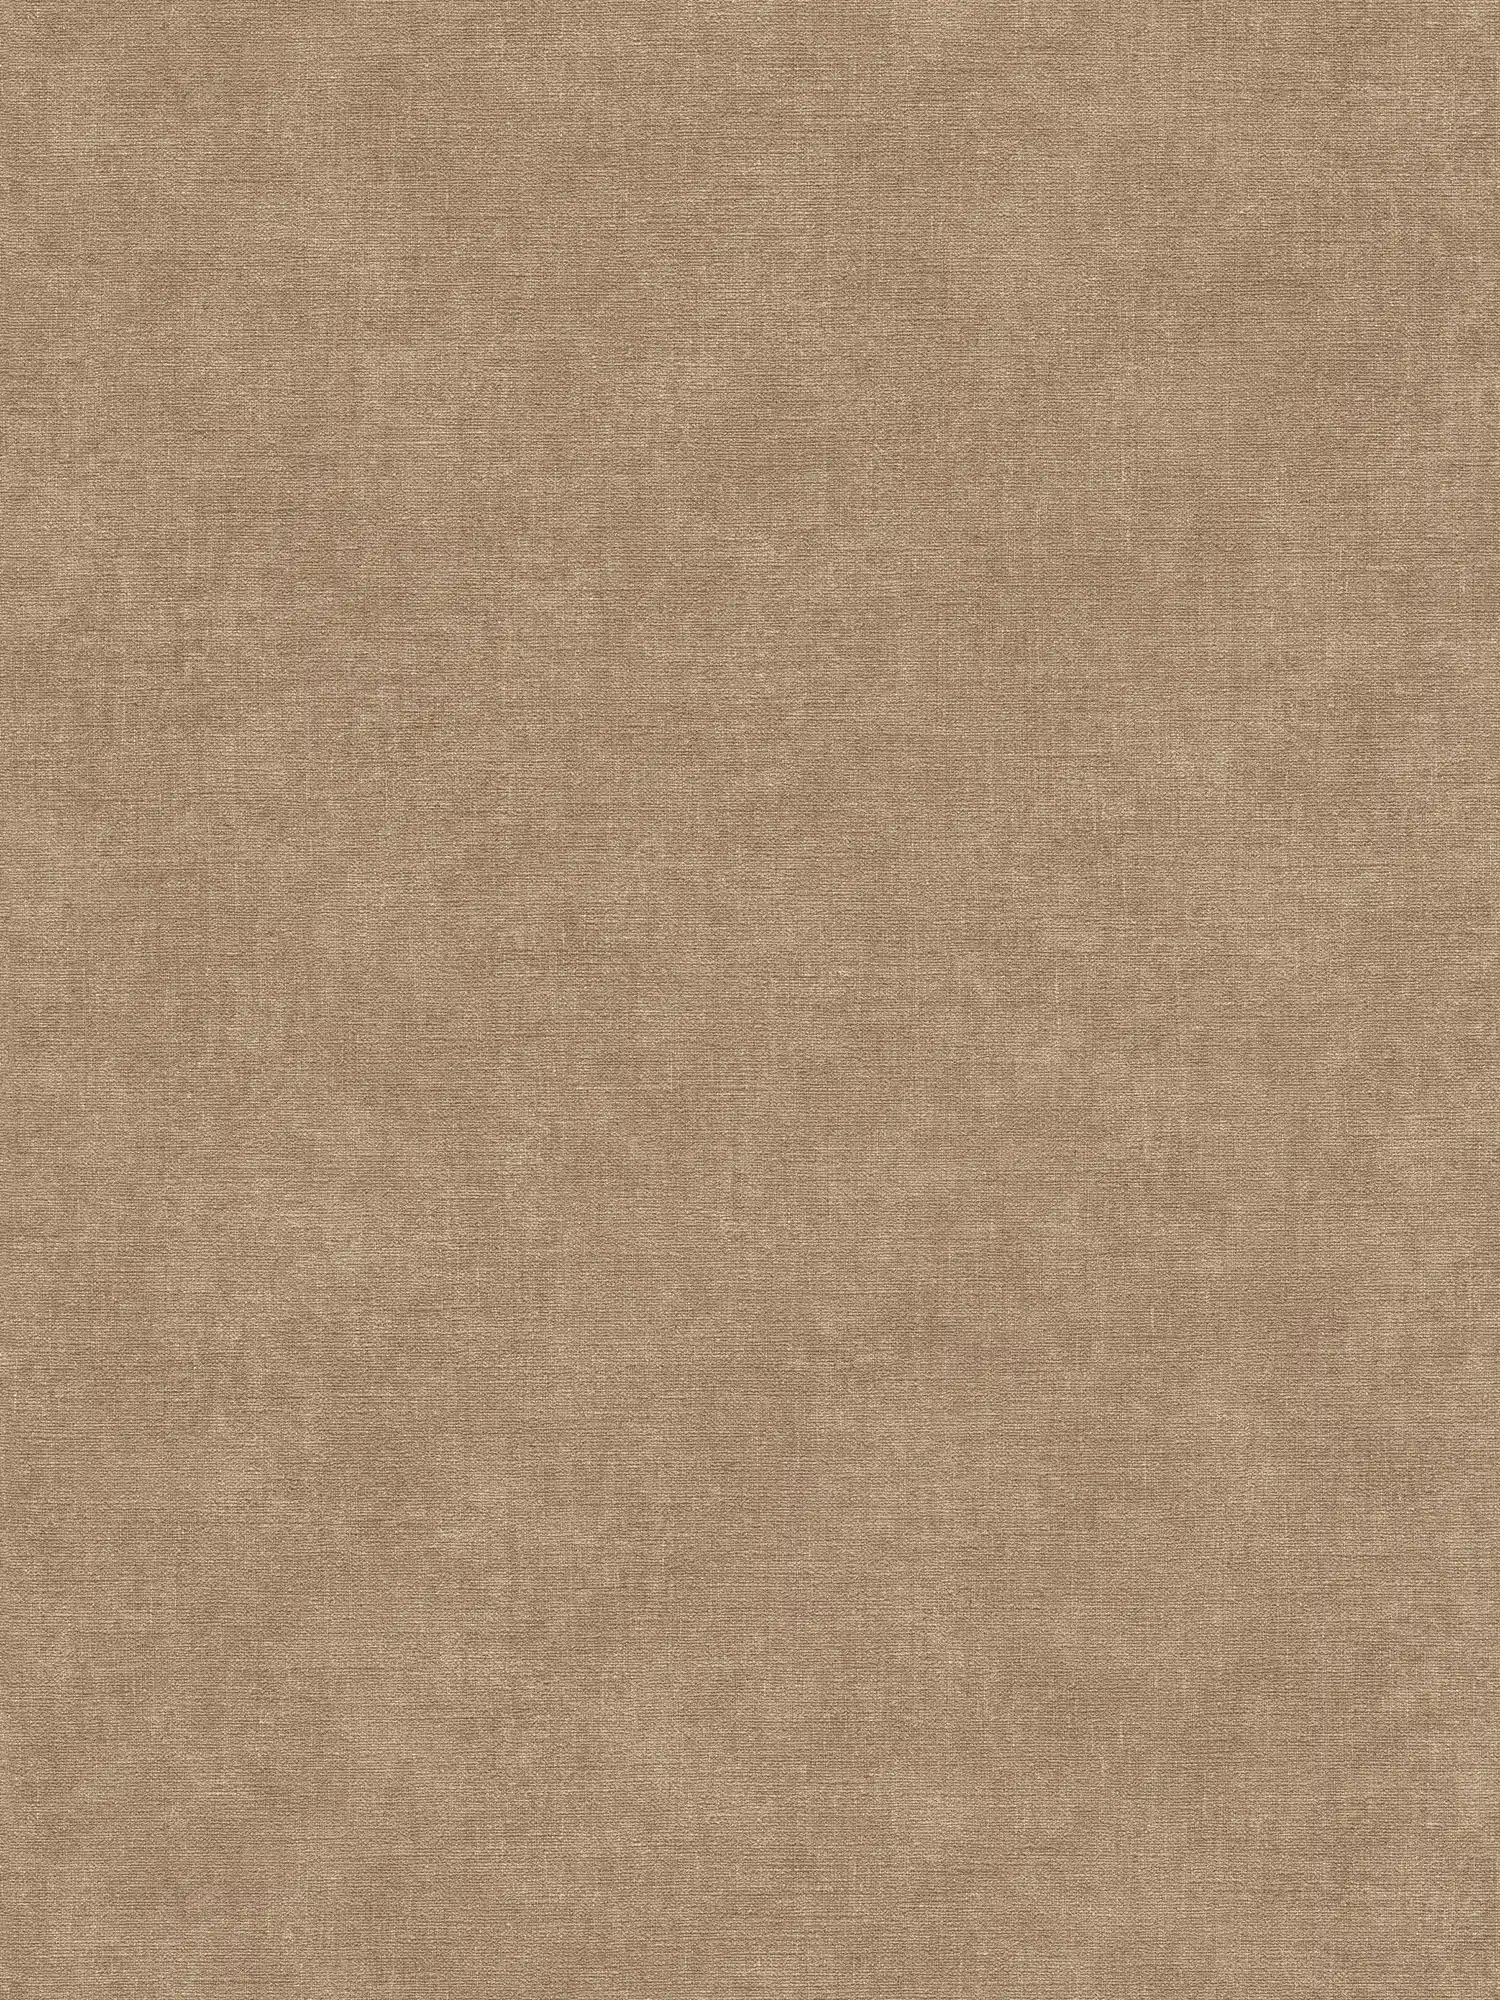 Effen vliesbehang in textiellook - bruin, beige
